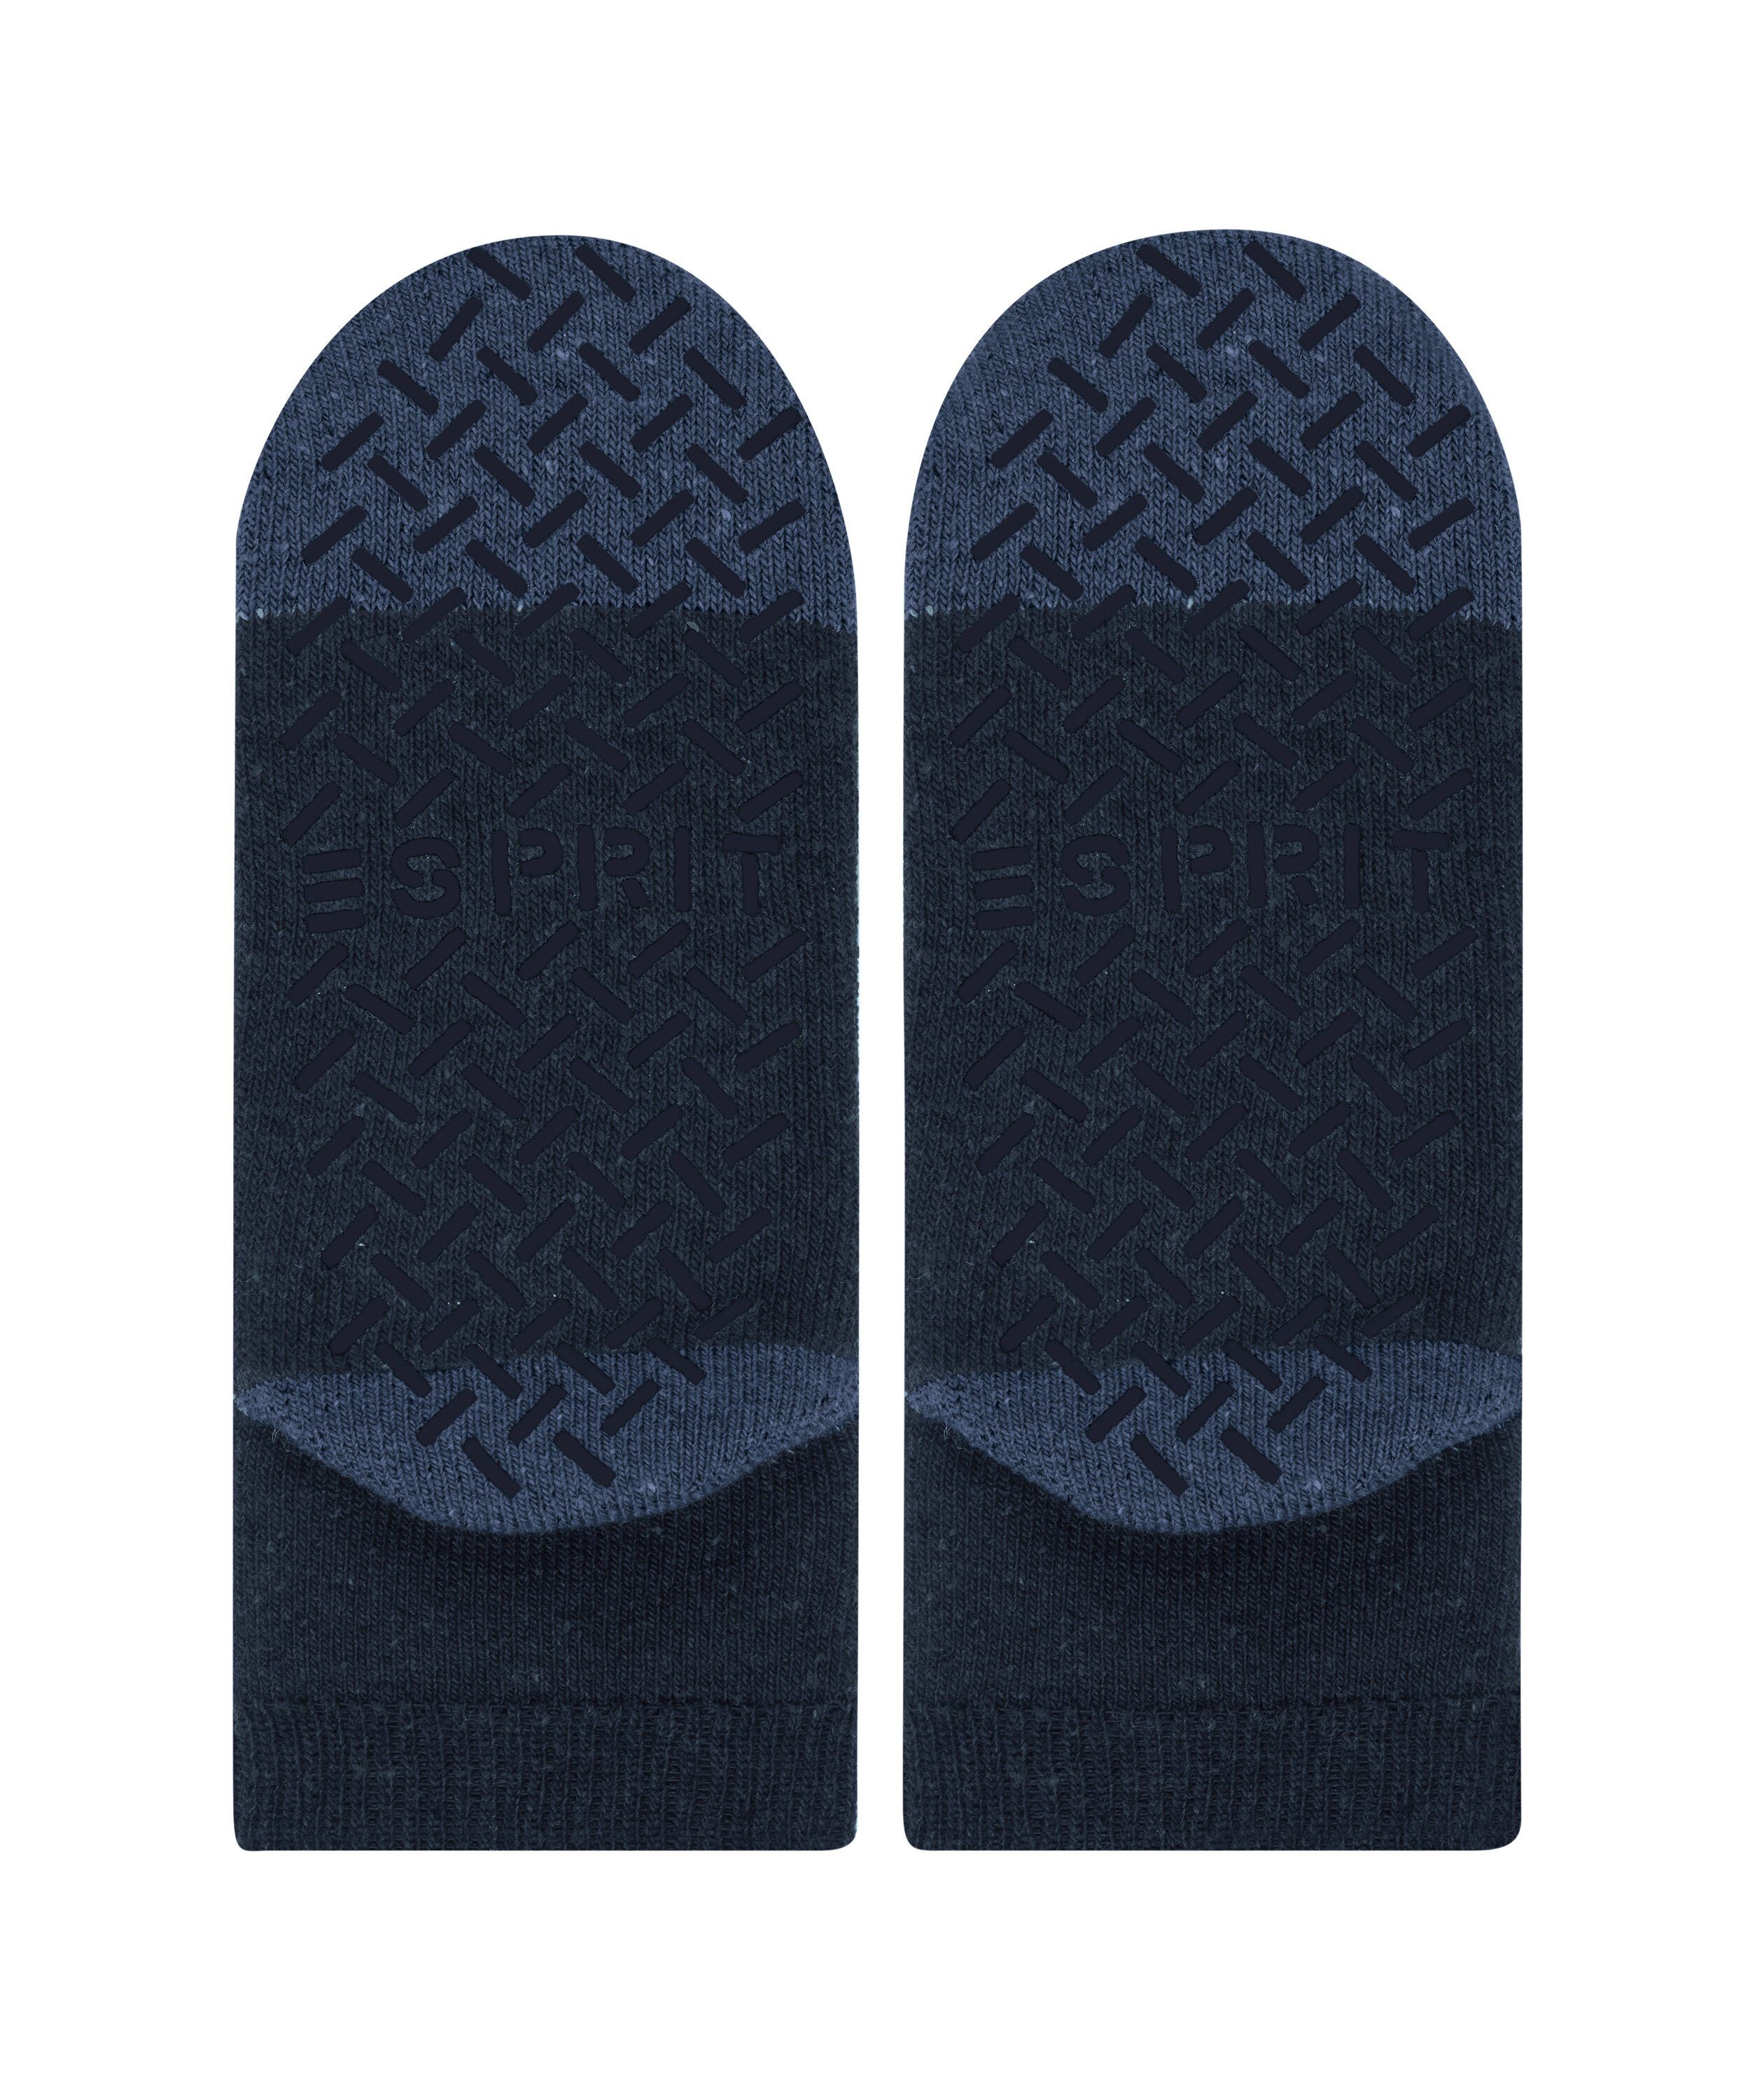 (6120) Effect (1-Paar) Socken Esprit marine